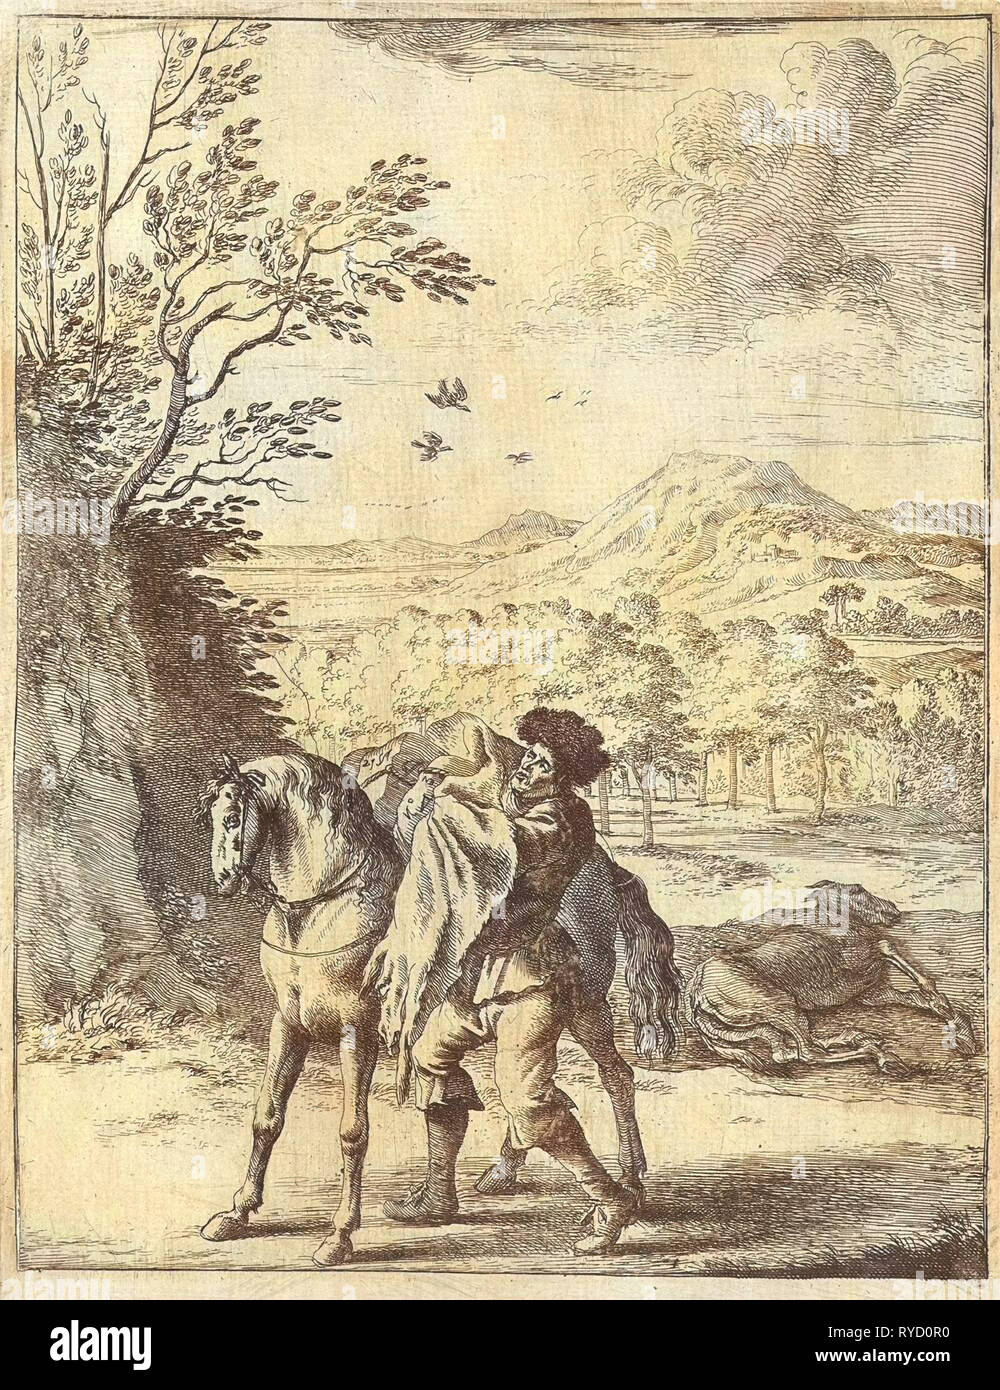 La Fábula del caballo y la mula, Dirk Stoop, John Ogilby, 1665 Foto de stock